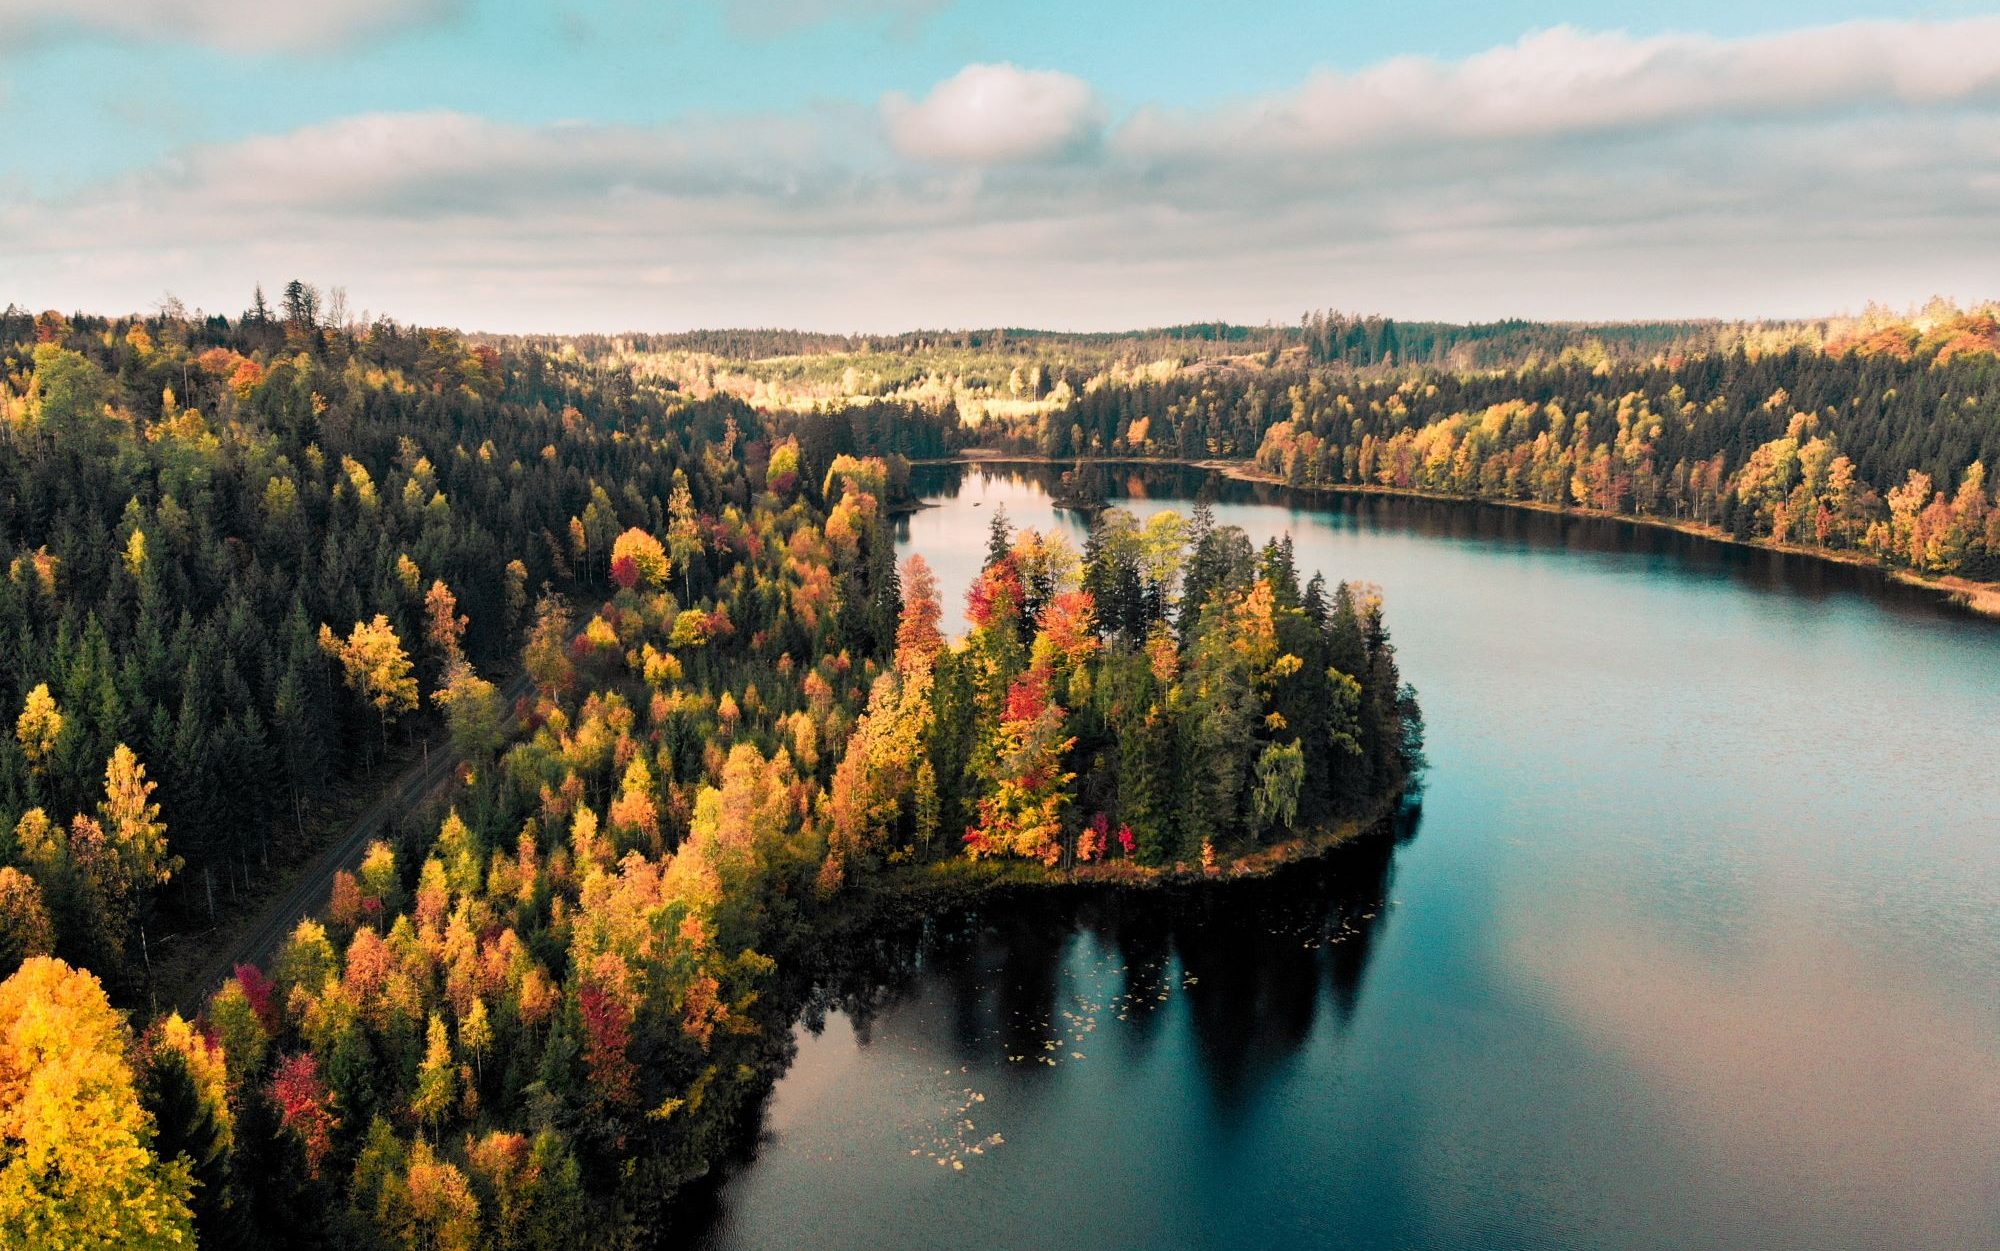 Reiseziele Oktober- See und herbstlicher Wald in Grün und Rottönen